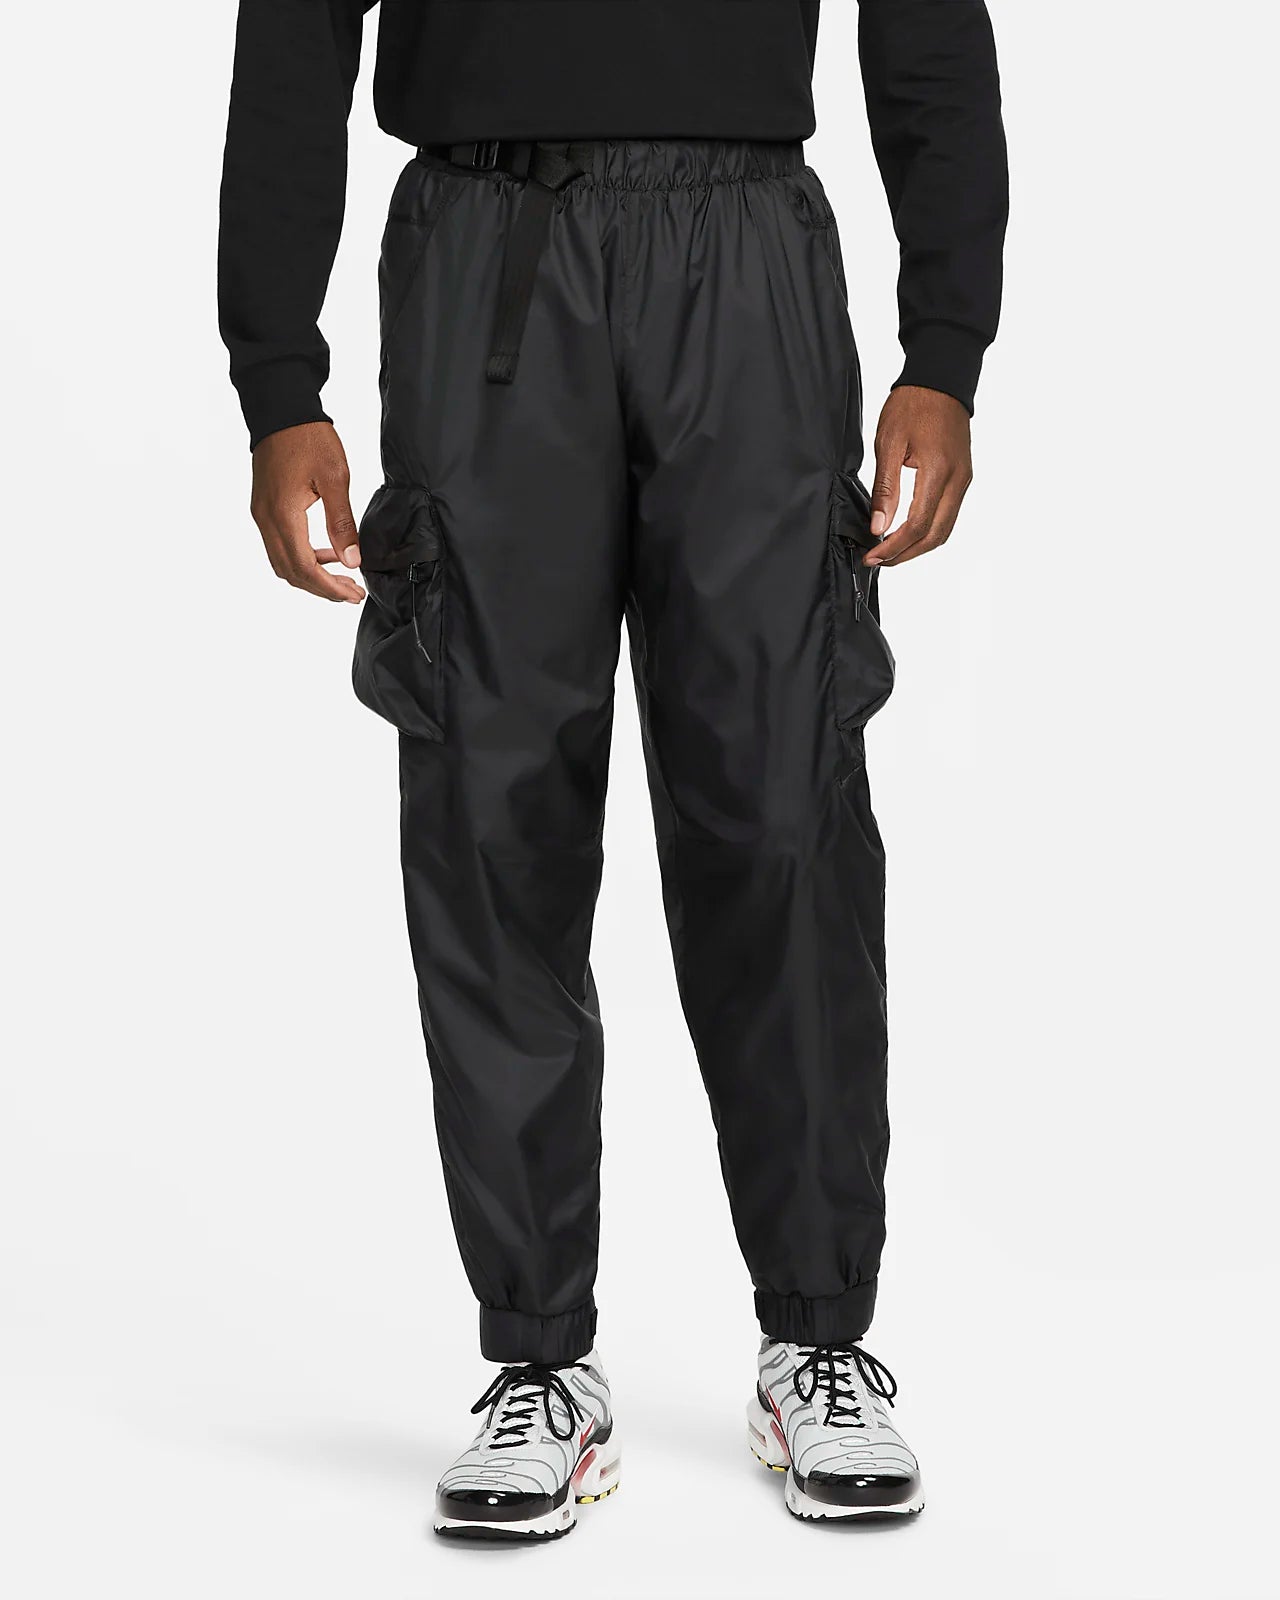 Nike Sportswear Repel Tech Pack Men's Lined Woven Pants